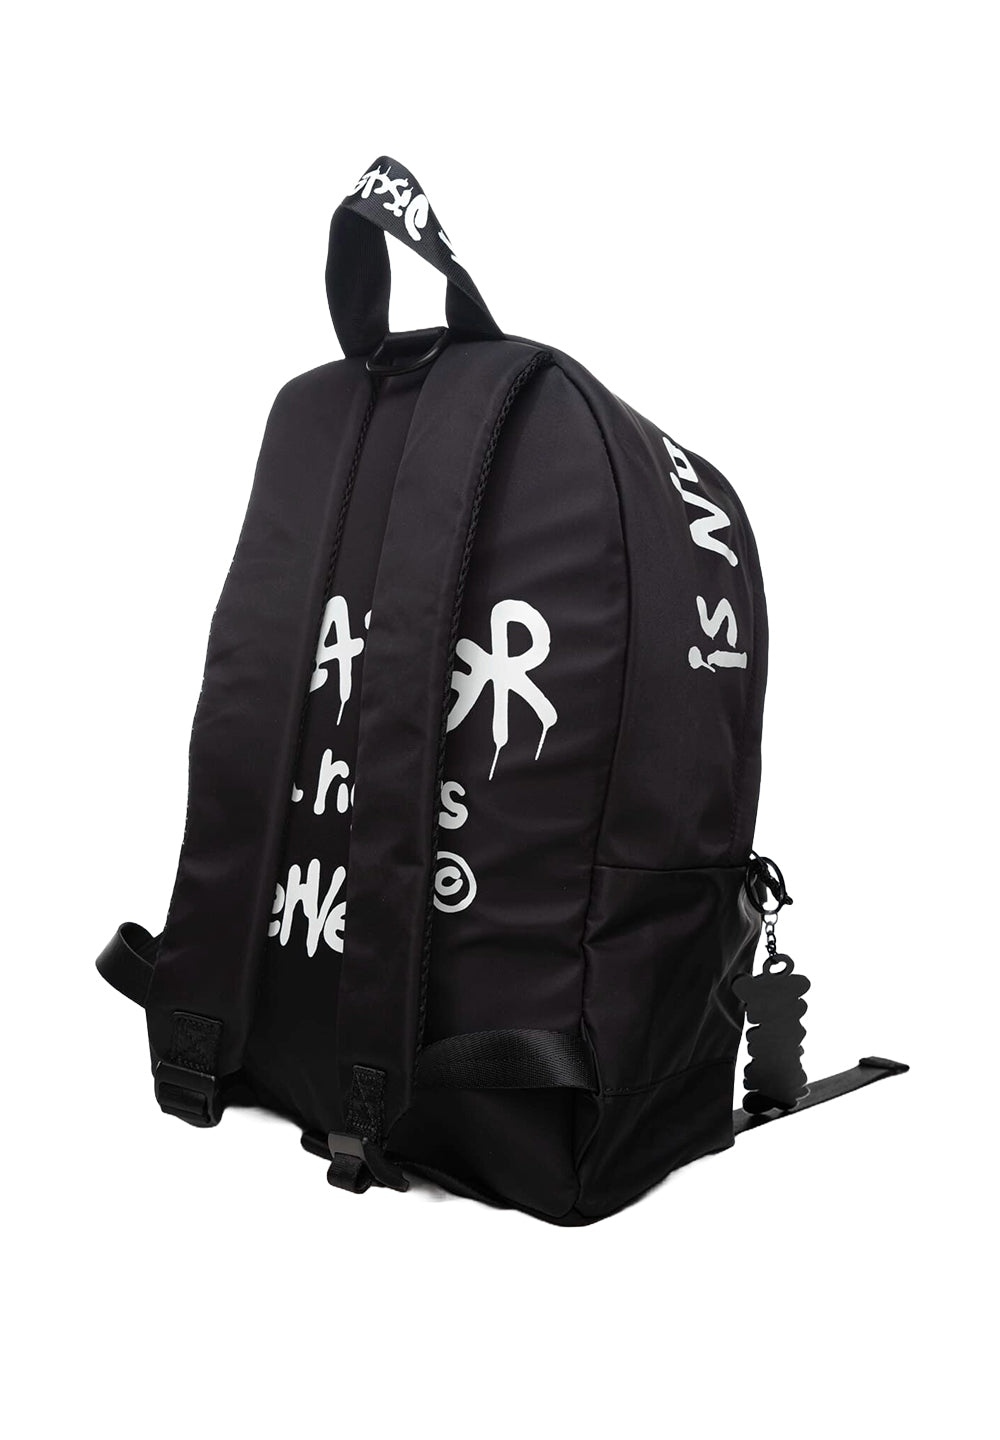 Black backpack for children